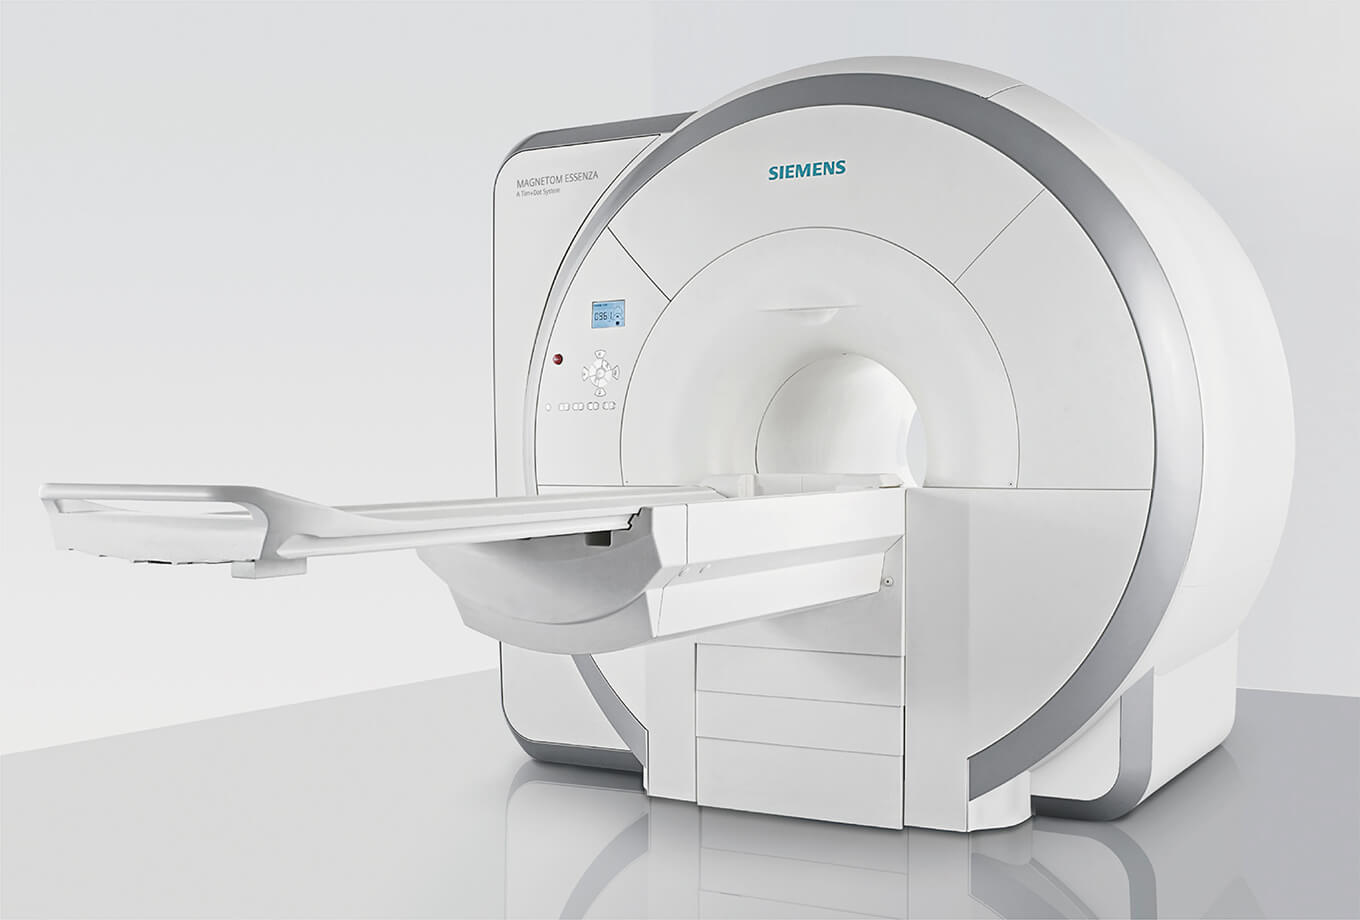 当院では超電導MRIを導入しており、高速でより精細な画像診断が可能となっております。